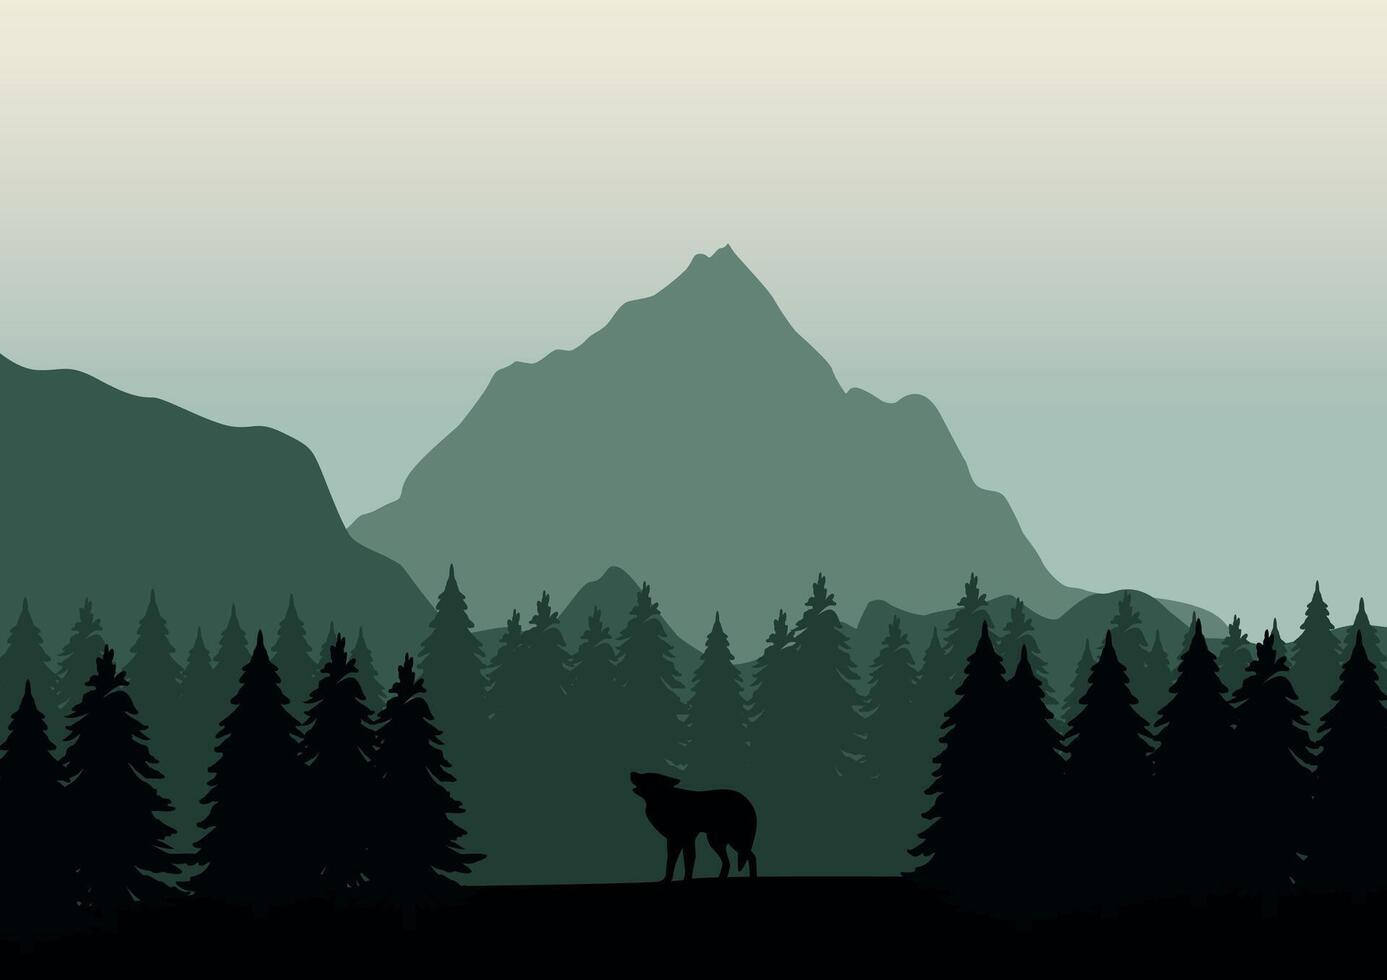 Varg i tall skogar och berg. illustration i en platt stil. vektor